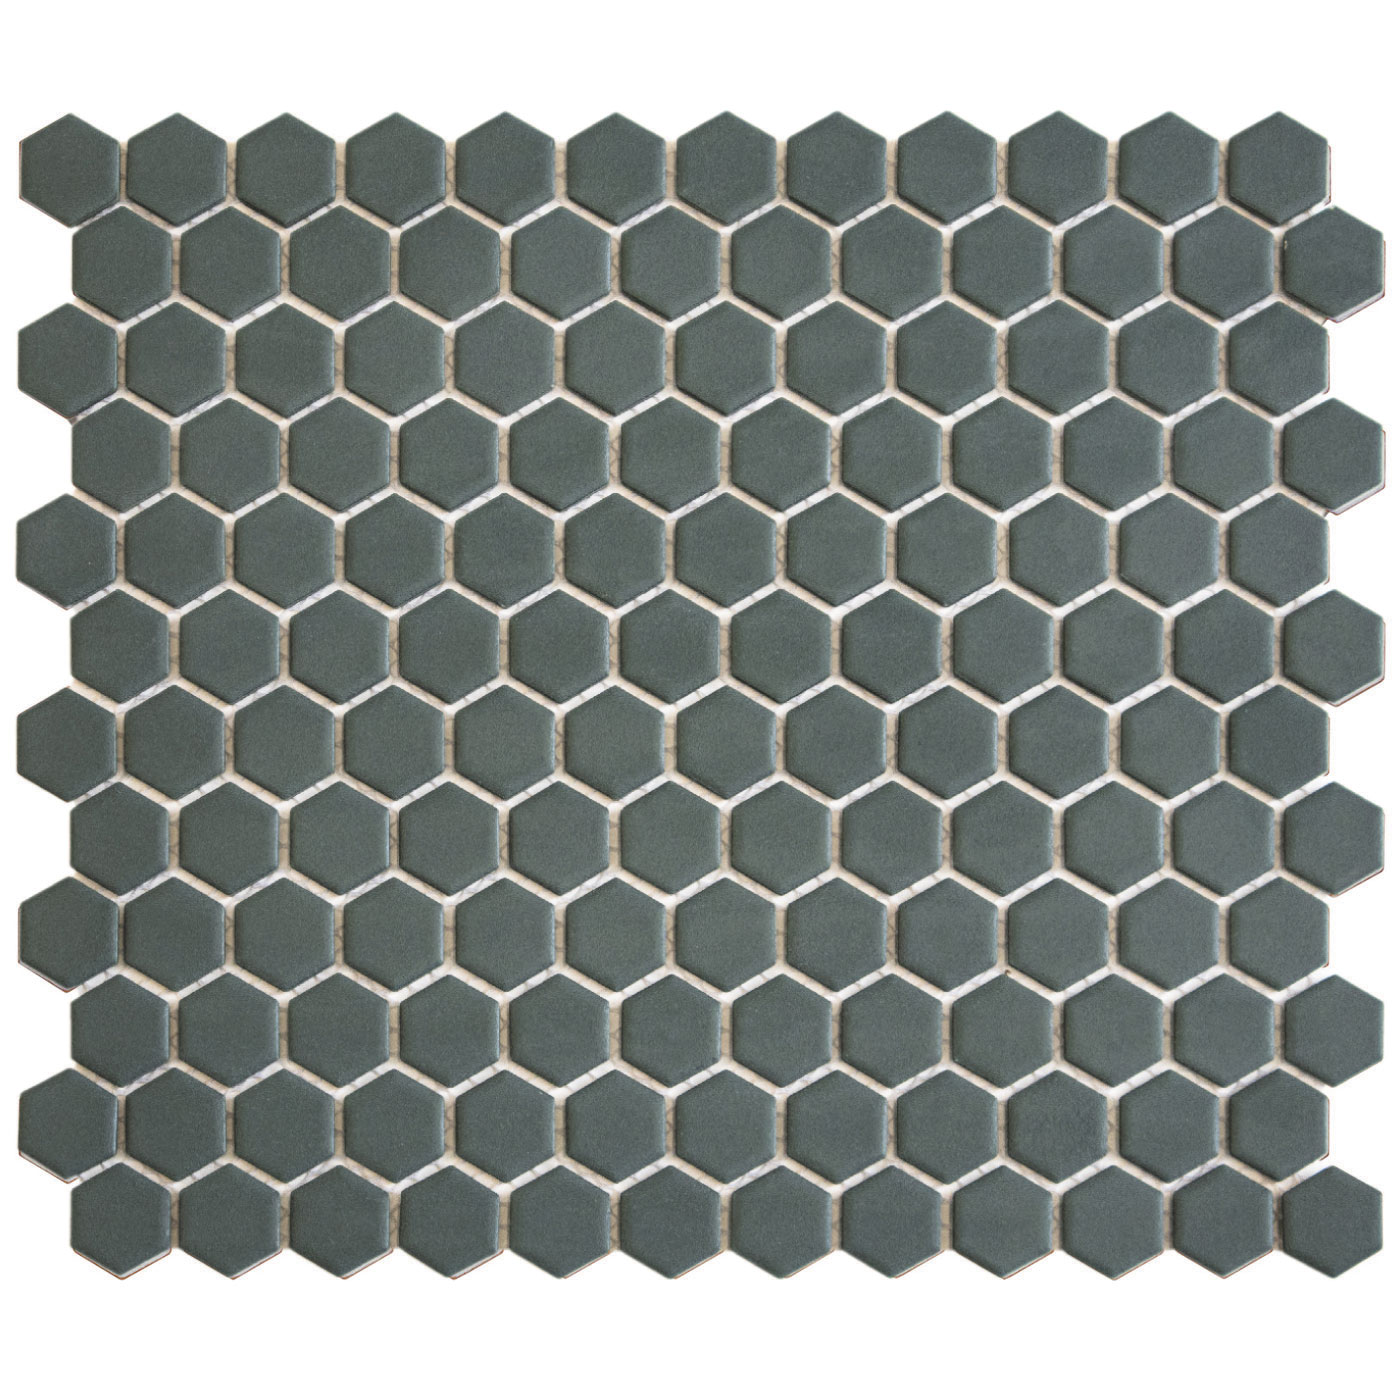 The Mosaic Factory Tegelsample:  Hexagon mozaïek tegels 23x26cm camo green mat